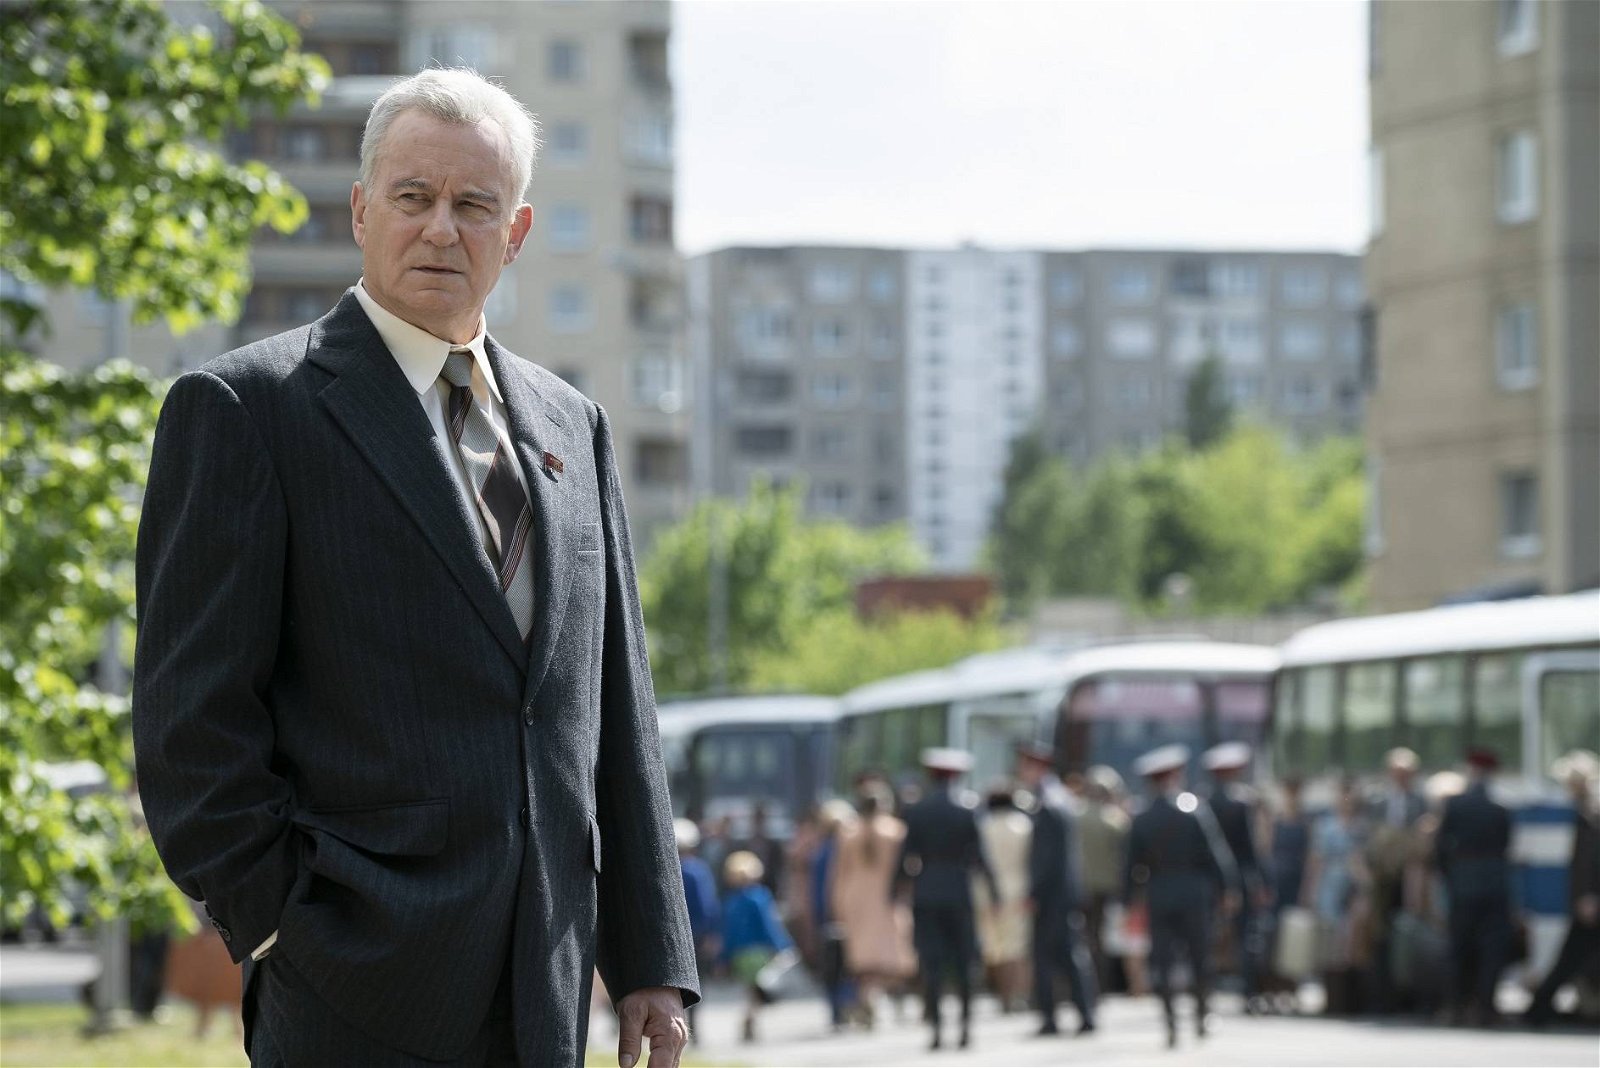 Immagine di Chernobyl: prime immagini ufficiali della nuova serie targata HBO!